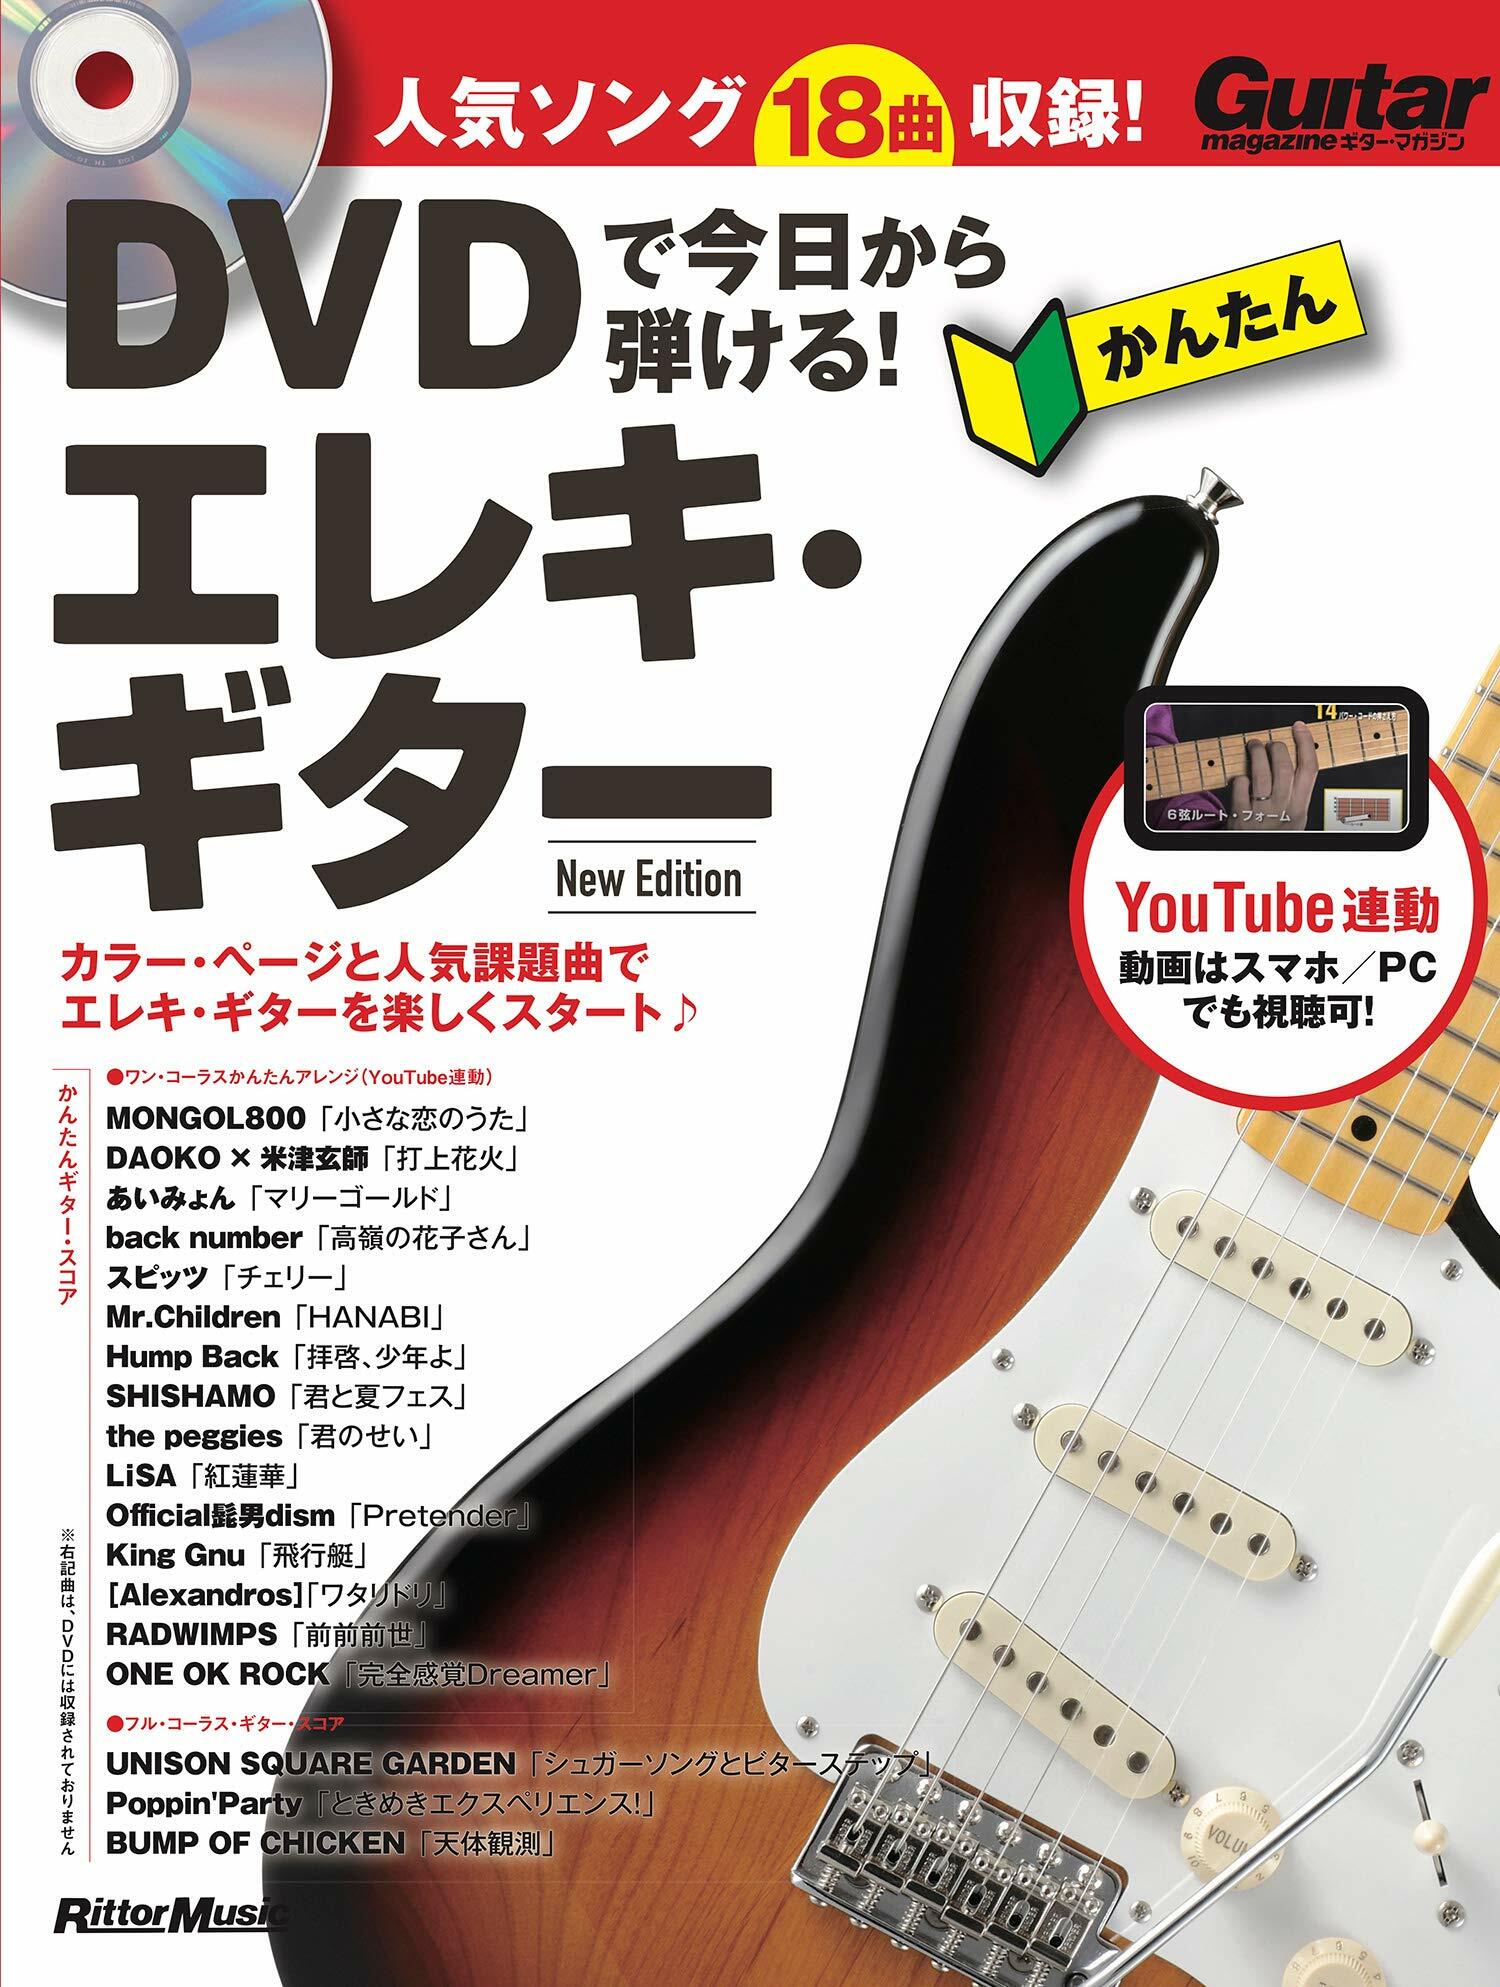 DVDで今日から彈ける!かんたんエレキ·ギタ- new ediction